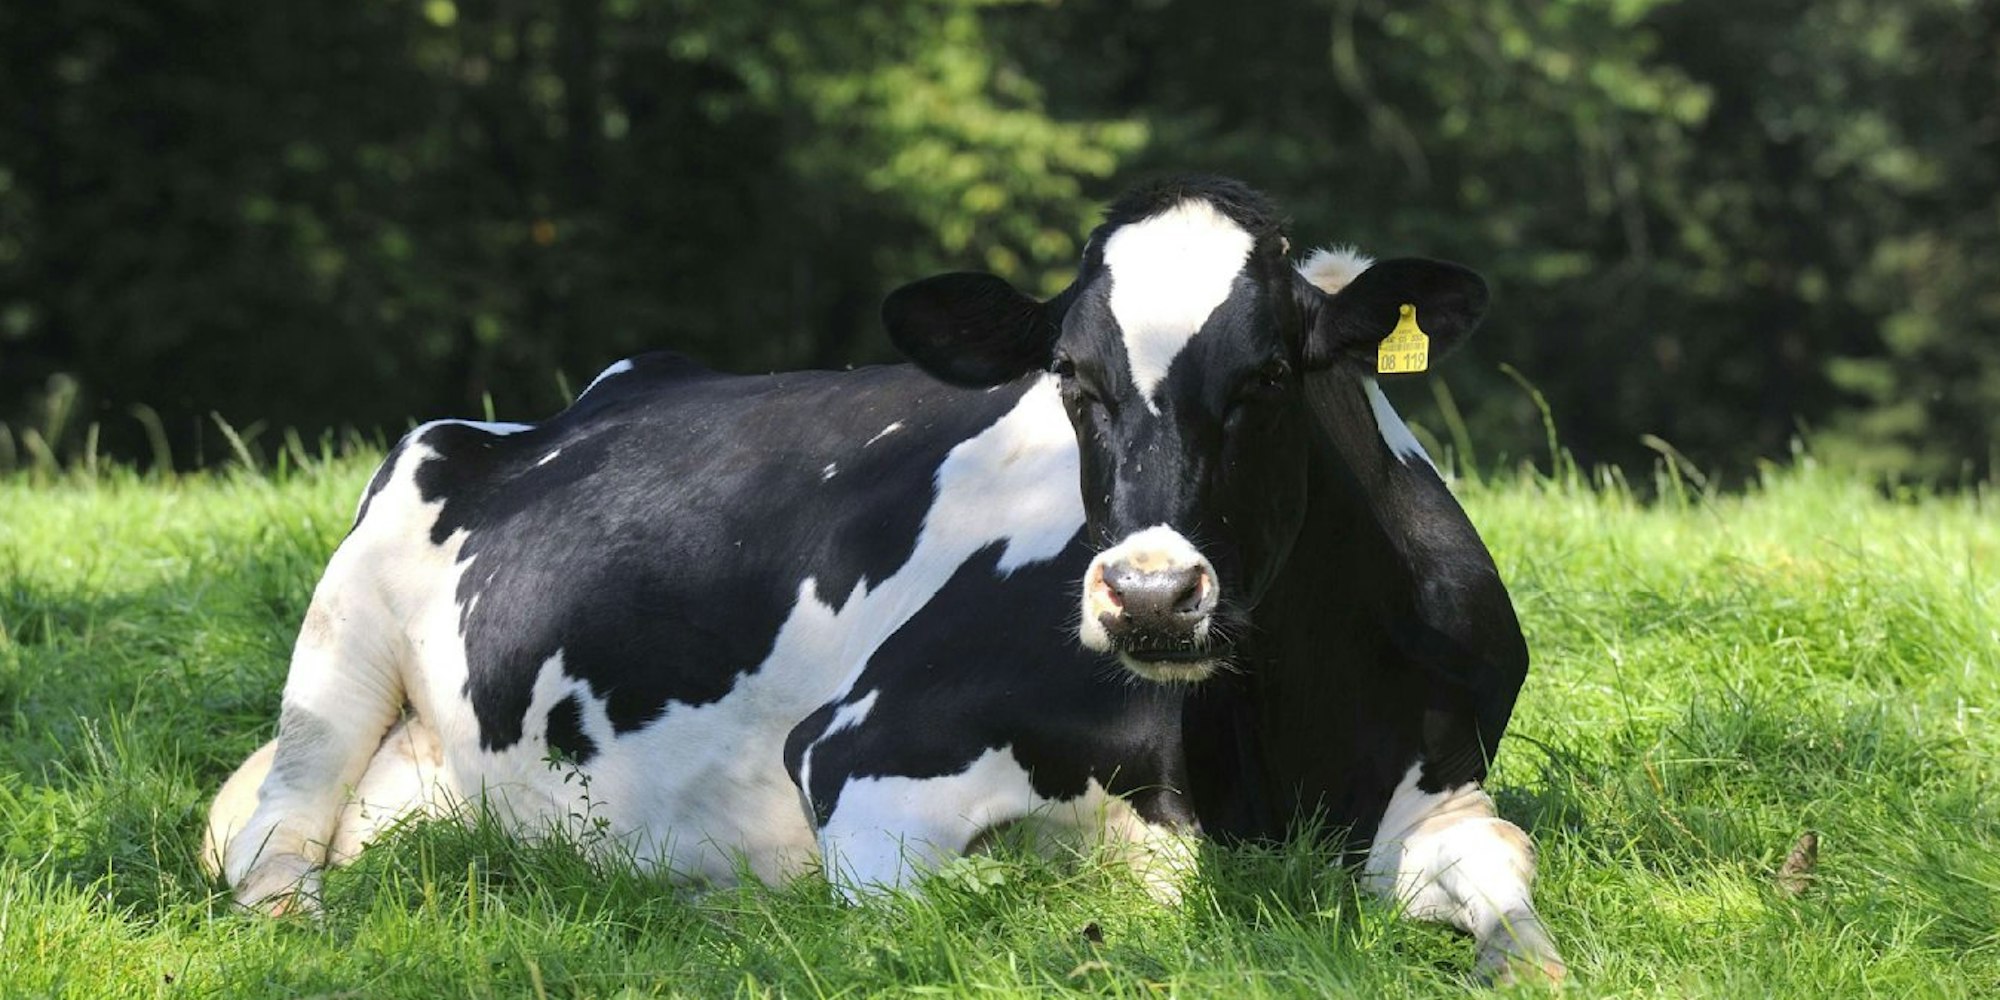 Ist die Kuh zufrieden - und bekommt sie viel Saftfutter (Gras) - gibt sie auch mehr und qualitativ bessere Milch. Das ist ein Fakt, der feststeht.